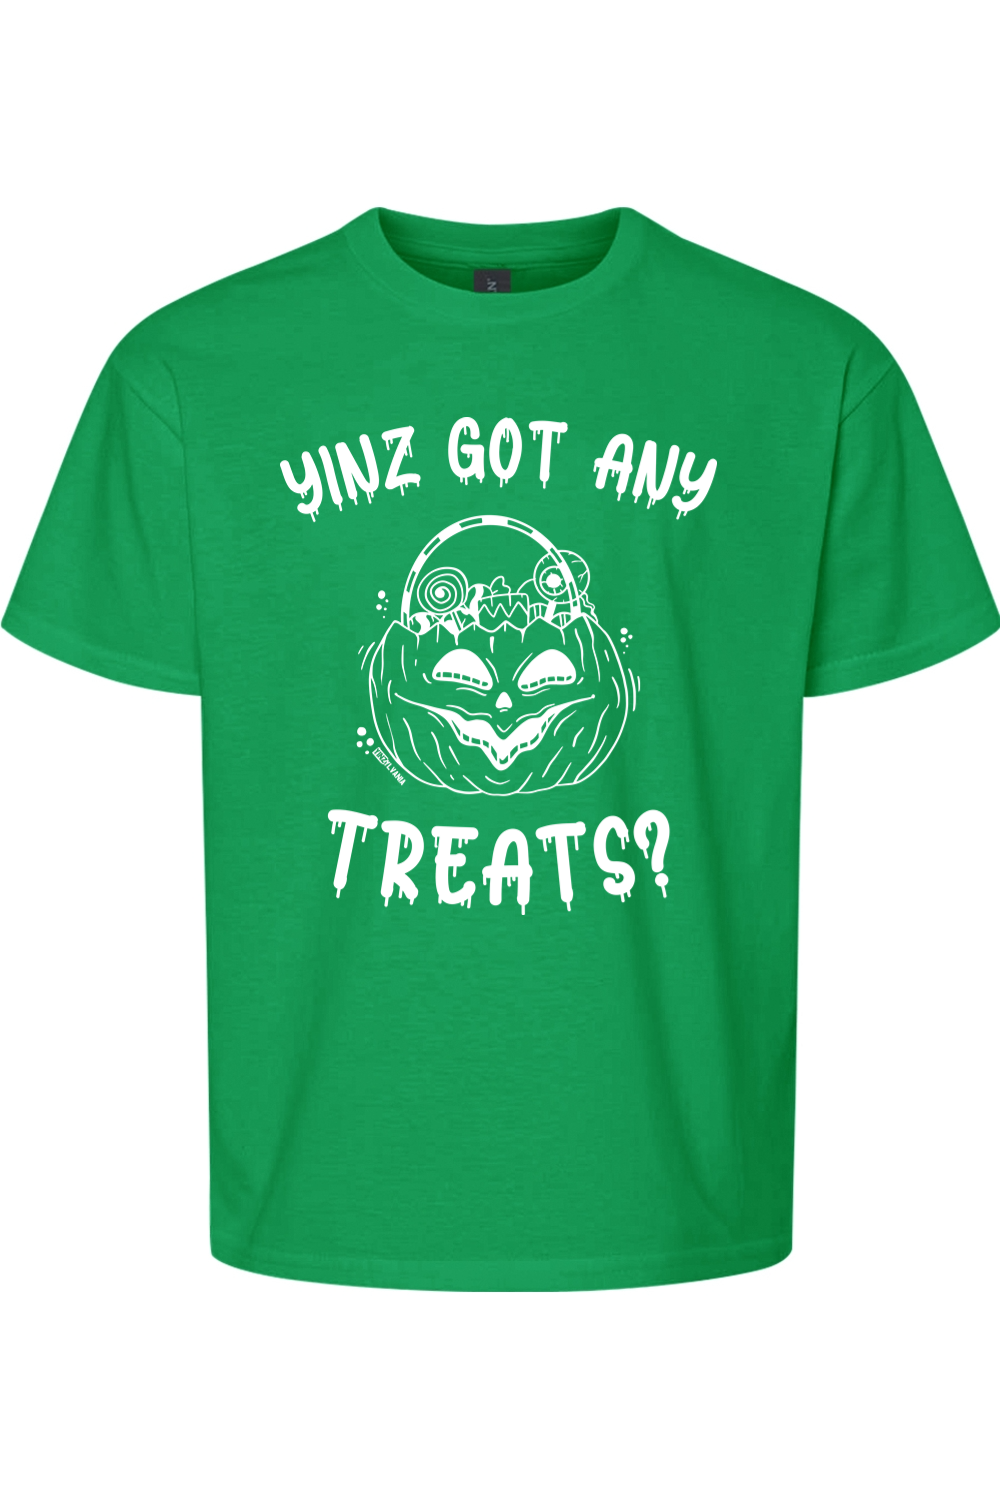 Yinz Got Any Treats? - Kids Tee - Yinzylvania